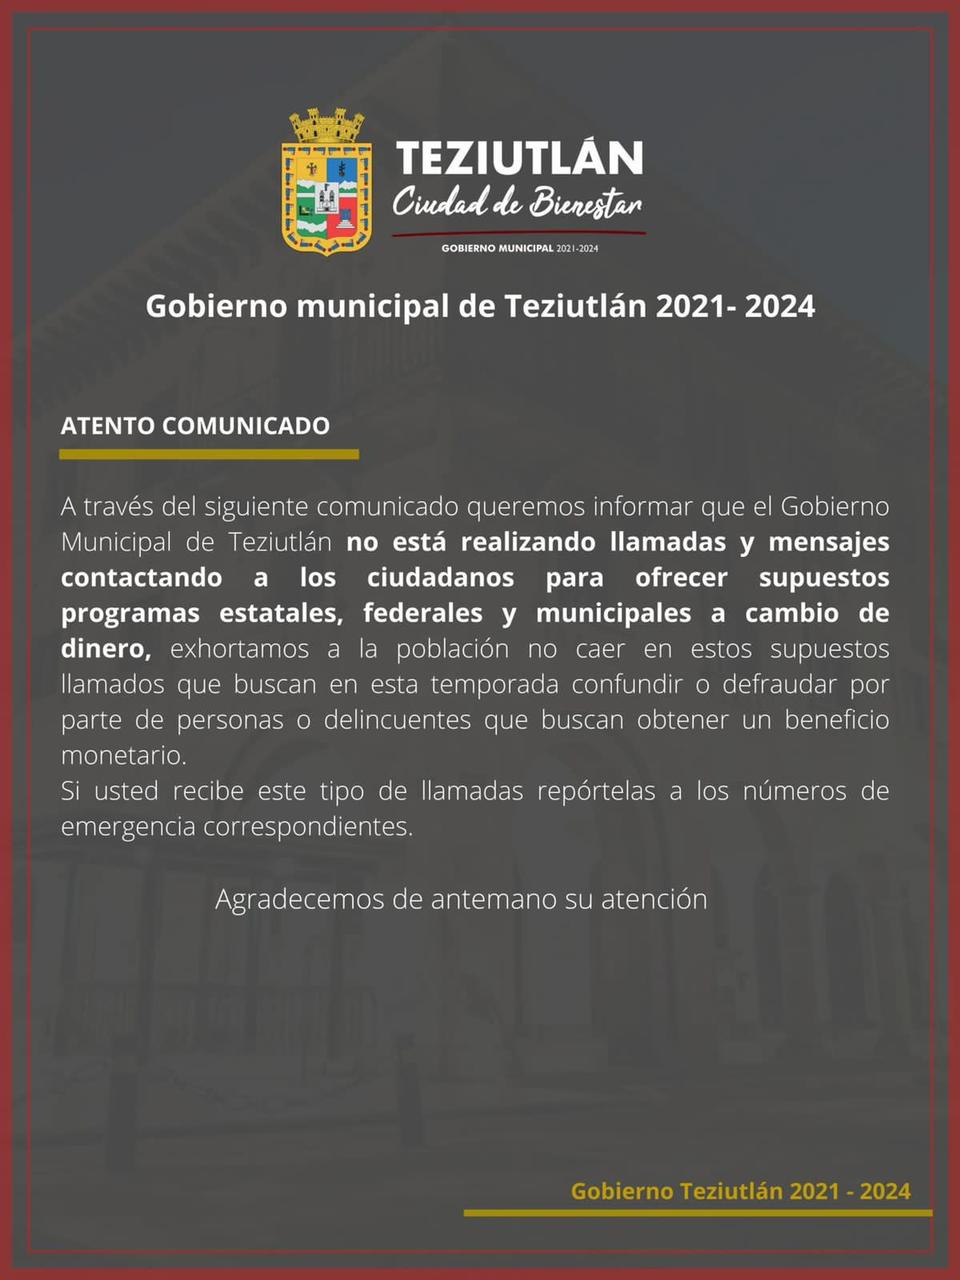 Desde Teziutlán: Ayuntamiento pide denunciar a quienes ofrezcan programas sociales a cambio de dinero